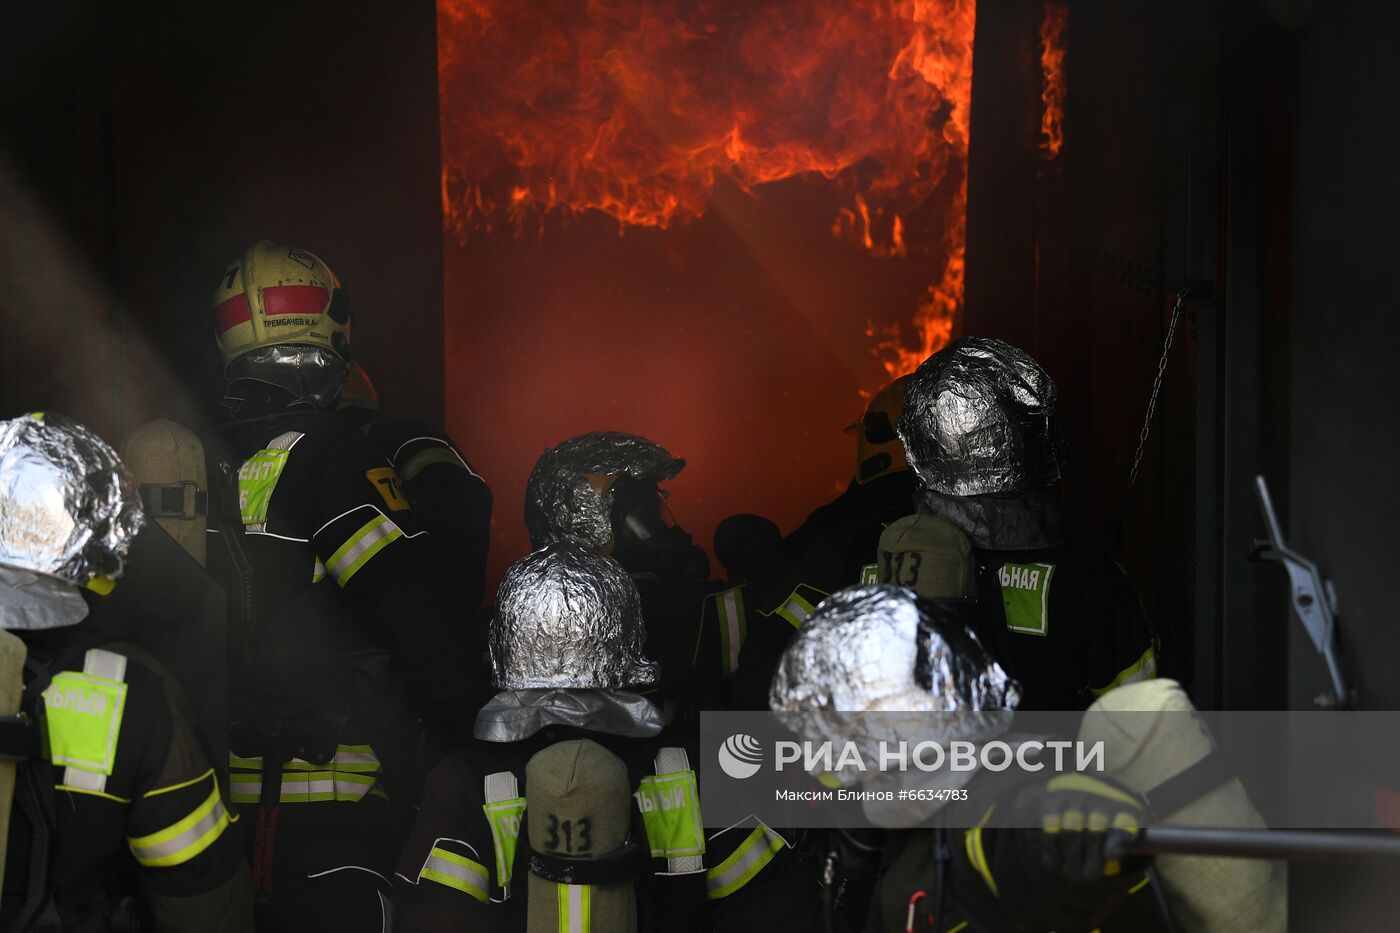 Тренировка пожарных и спасателей на новом комплексе полигона "Апаринки" ГОЧСиПБ